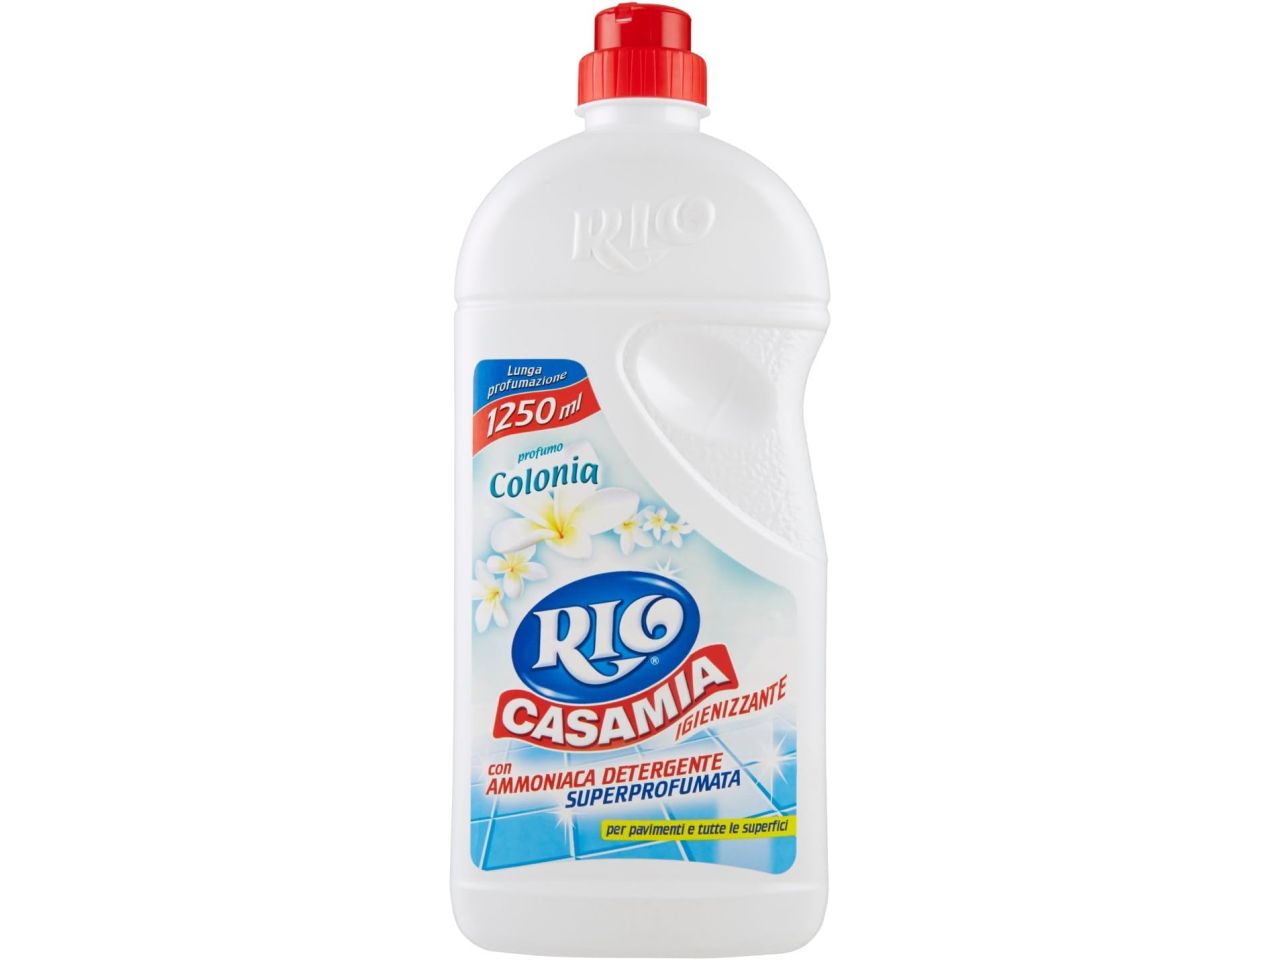 Rio casamia 1250ml detergente per pavimenti al profumo di colonia$